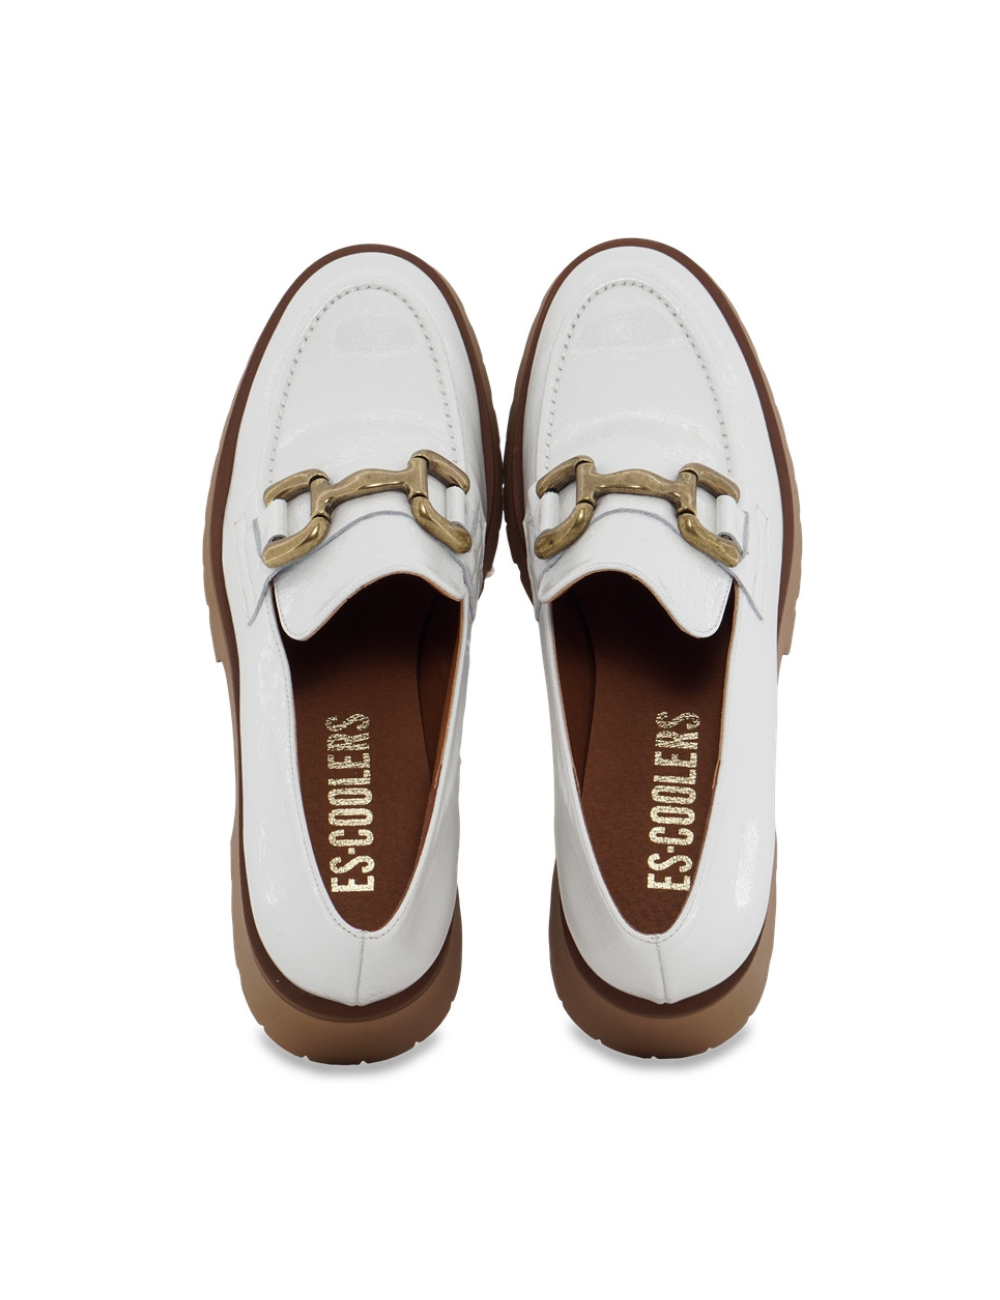 Zapatos de piel con cordones para mujer, botines deportivos, bailarinas  blancas con suela gruesa, hechos a mano con piel natural -  España